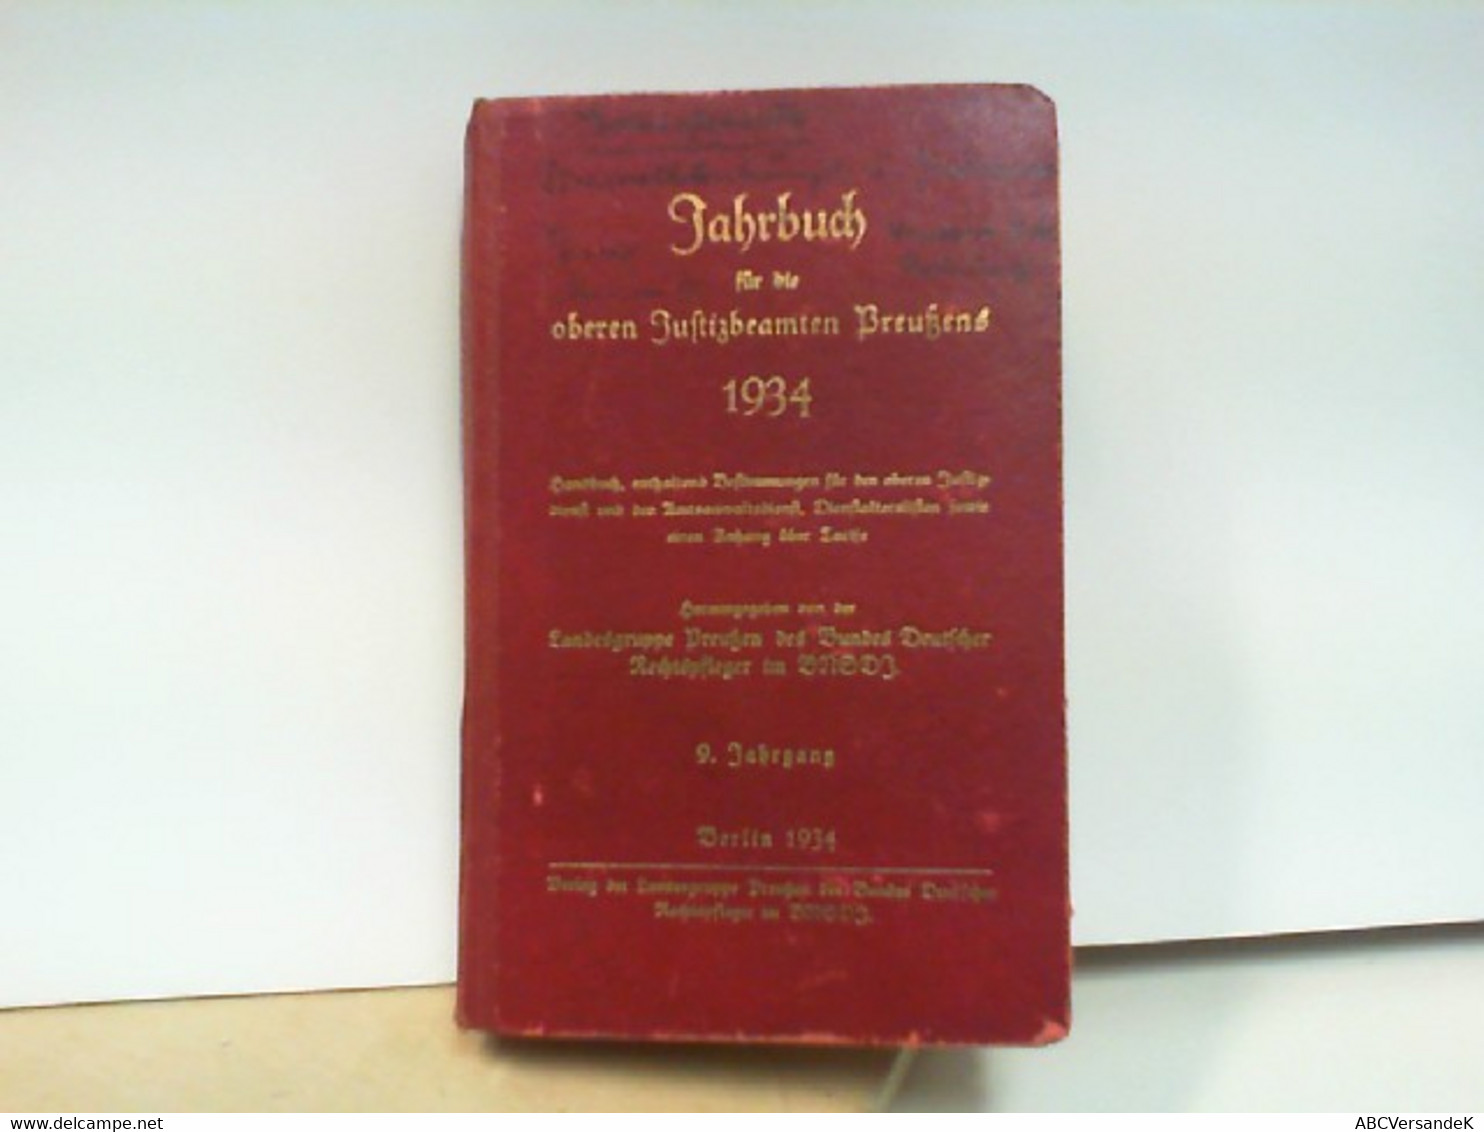 Jahrbuch Für Die Oberen Justizbeamten Preußens 1934 ( 9.Jahrgang ) - Calendriers